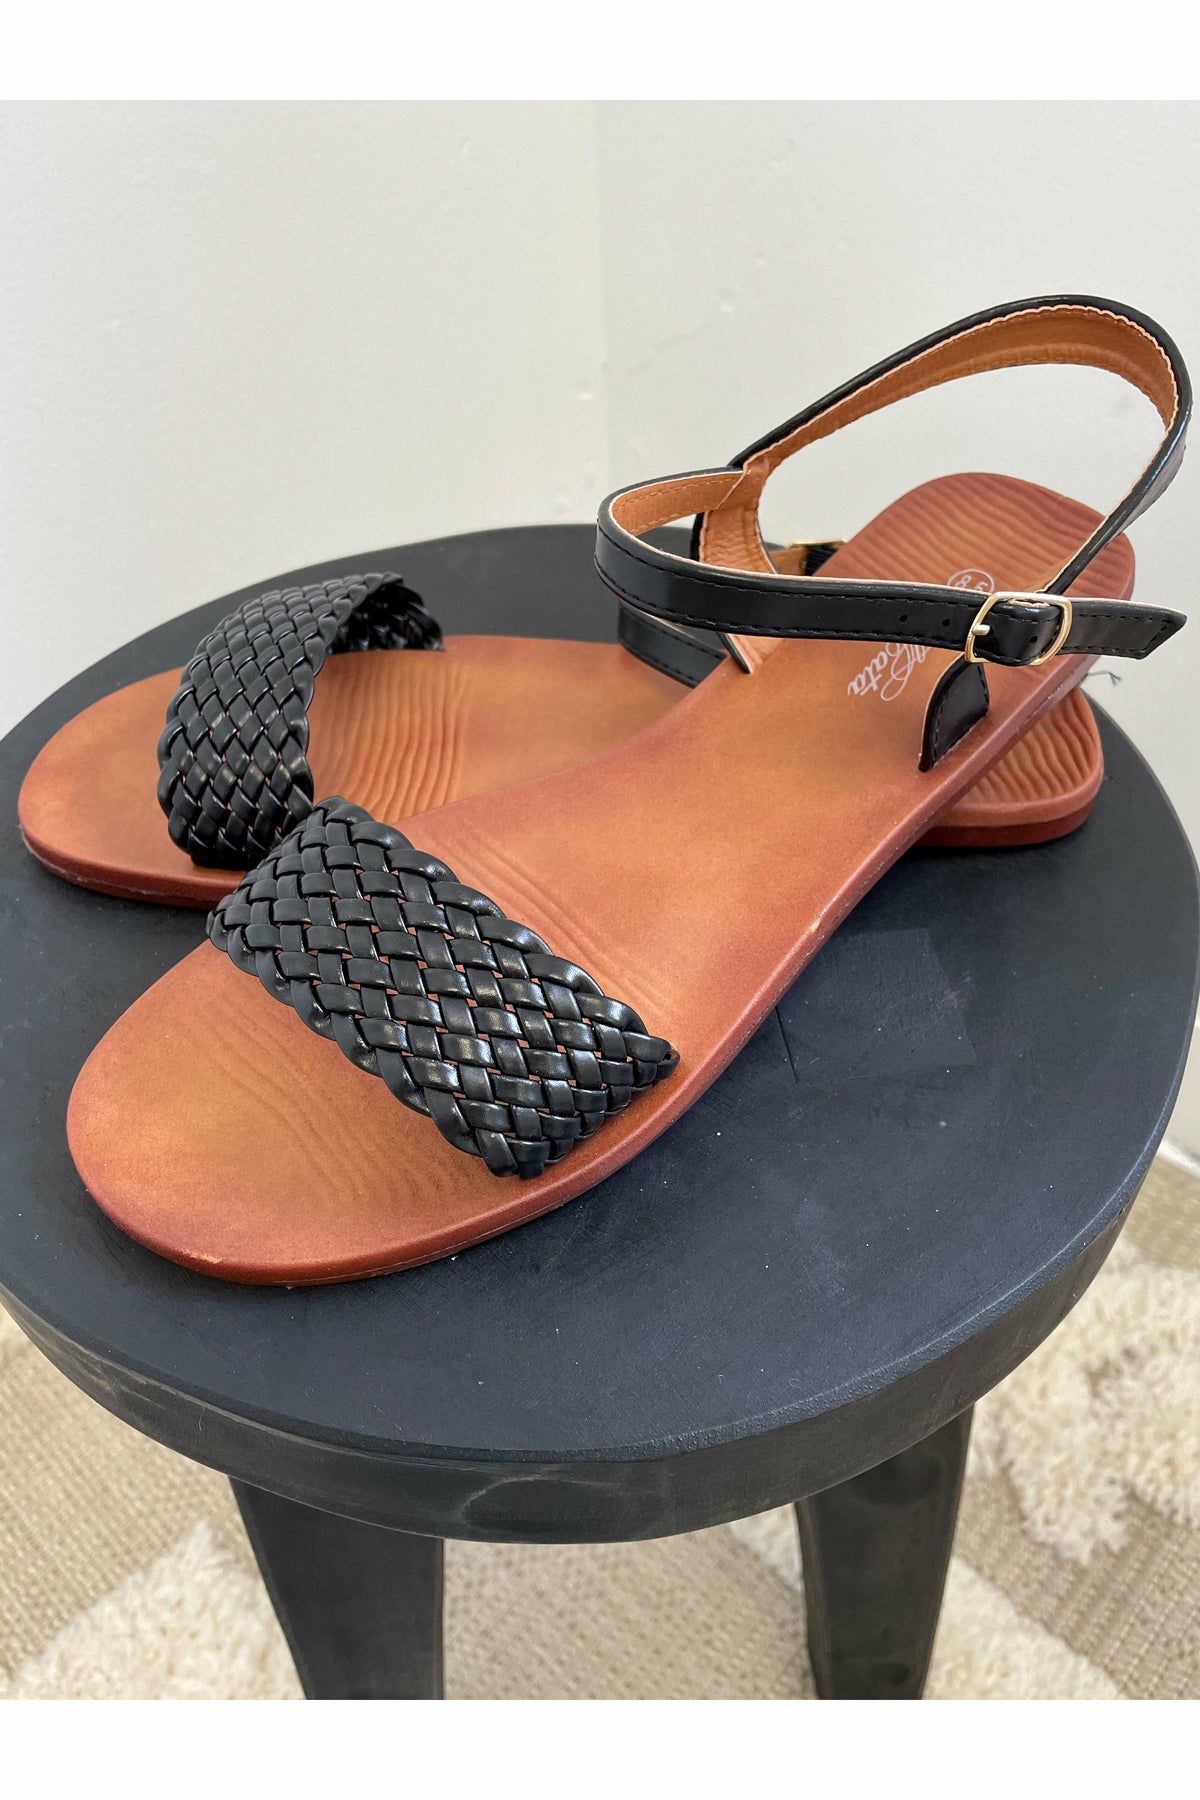 St. Croix Sandals